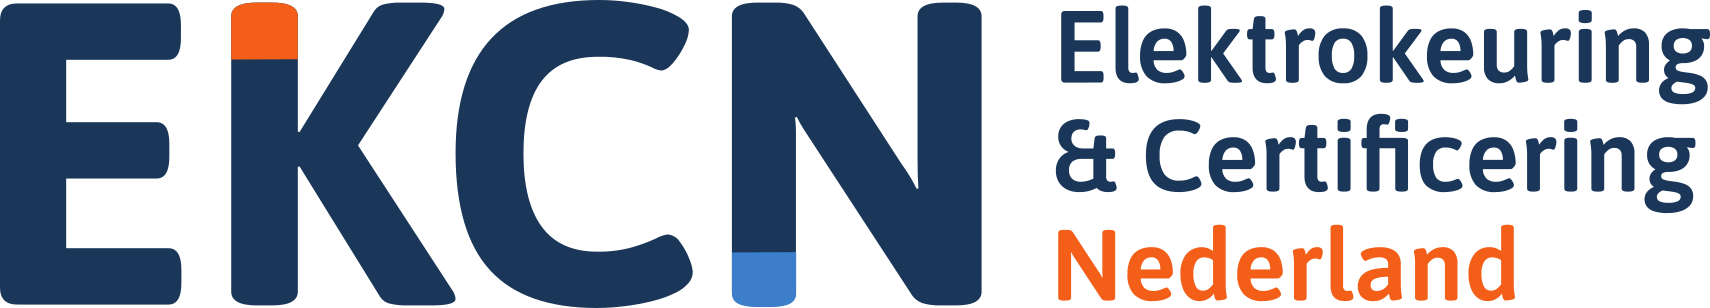 Incontrol-klant-EKCN-logo-png